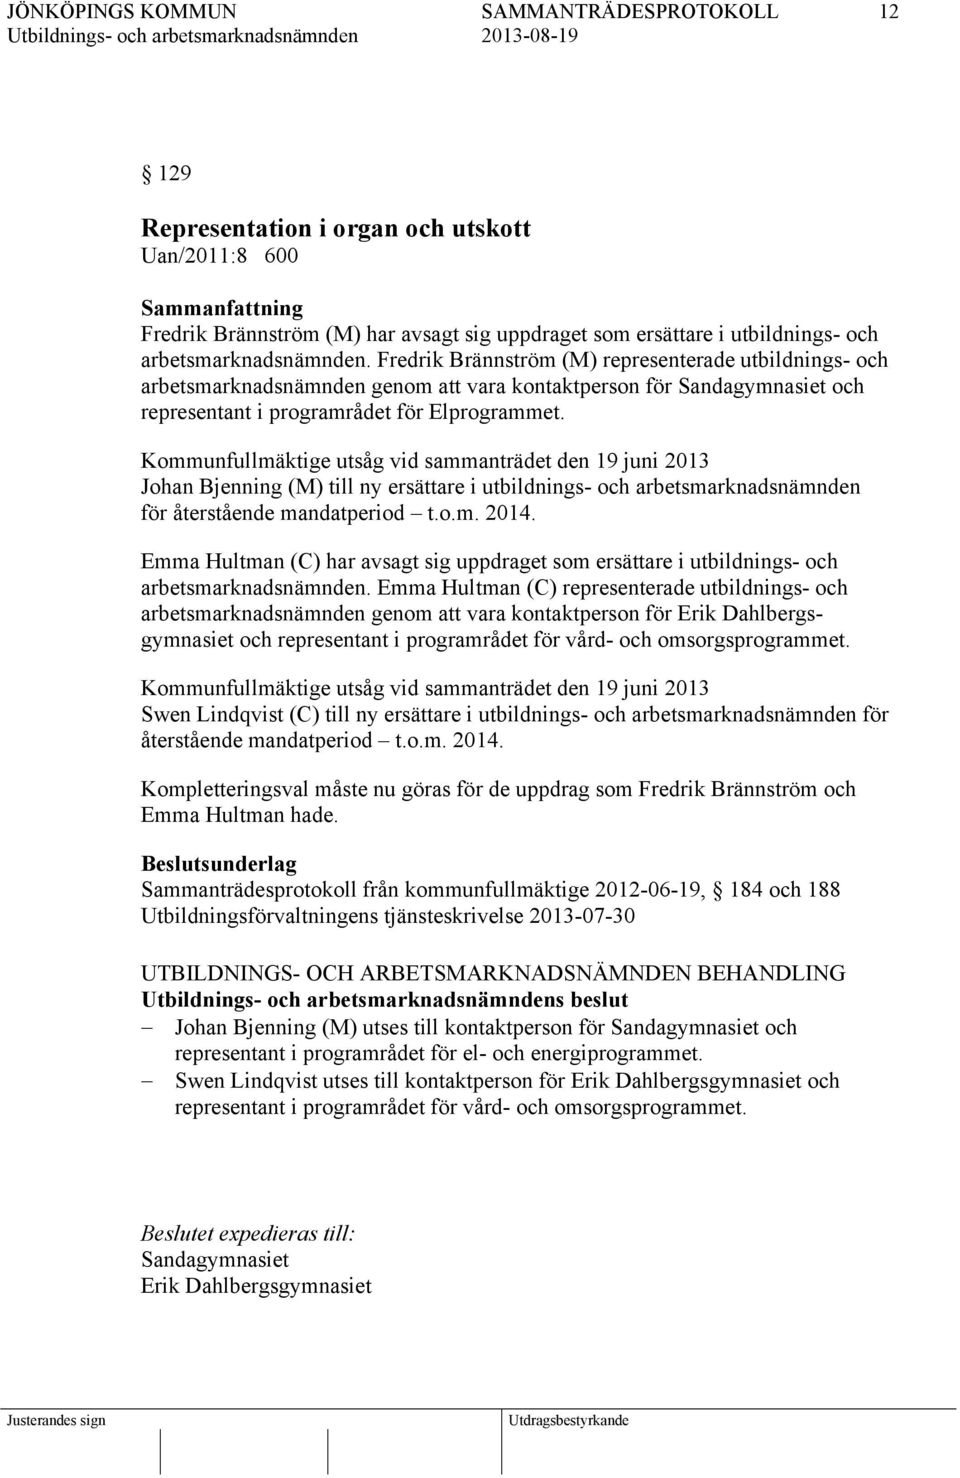 Kommunfullmäktige utsåg vid sammanträdet den 19 juni 2013 Johan Bjenning (M) till ny ersättare i utbildnings- och arbetsmarknadsnämnden för återstående mandatperiod t.o.m. 2014.